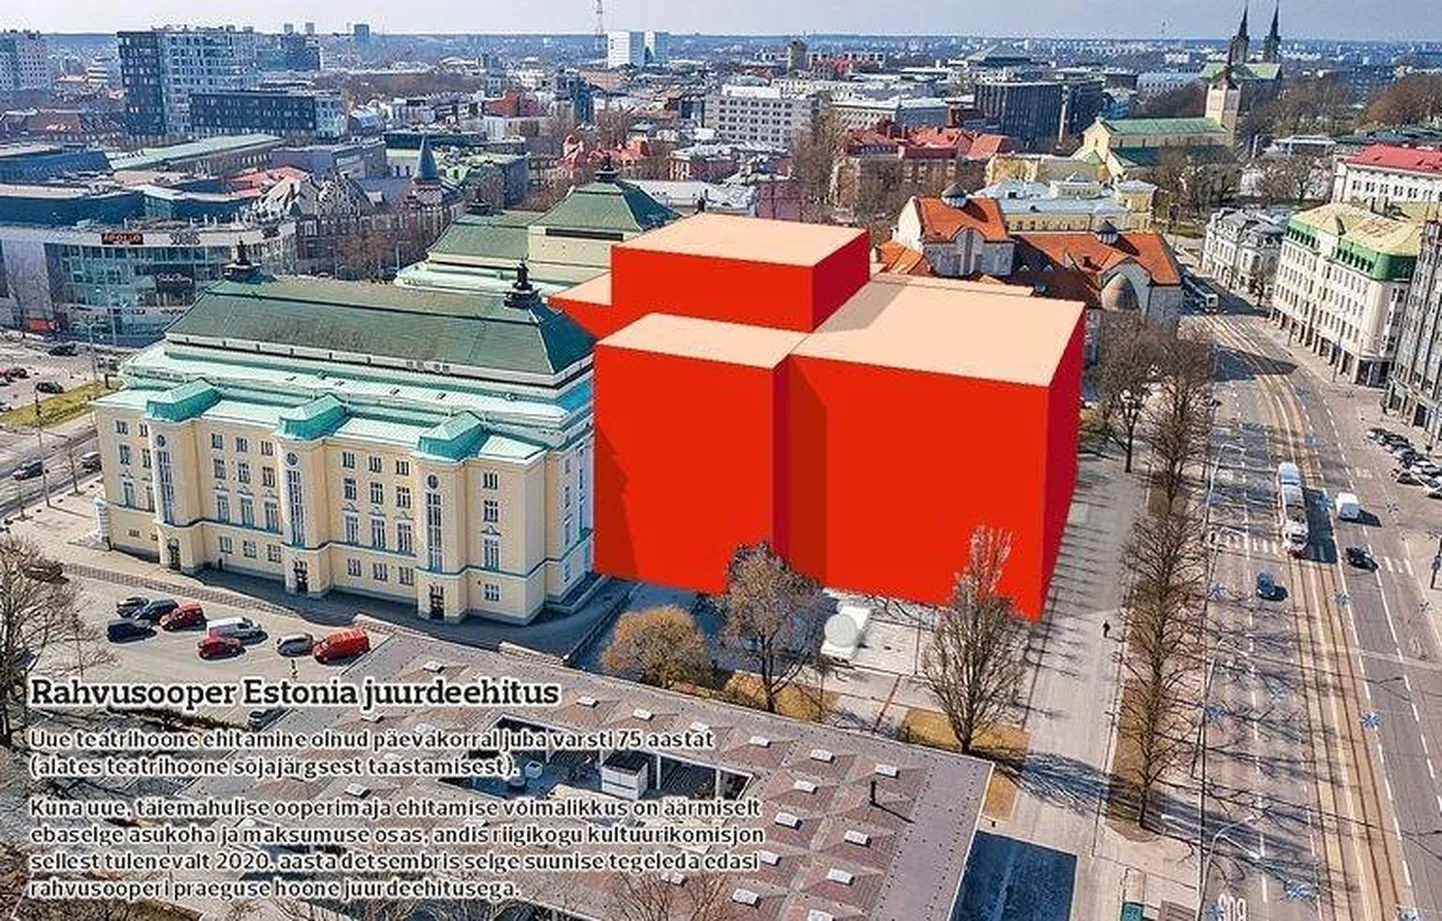 Estonia juurdeehitus võtaks linnaruumis umbes nii palju ruumi. FOTO: Estonia/pm